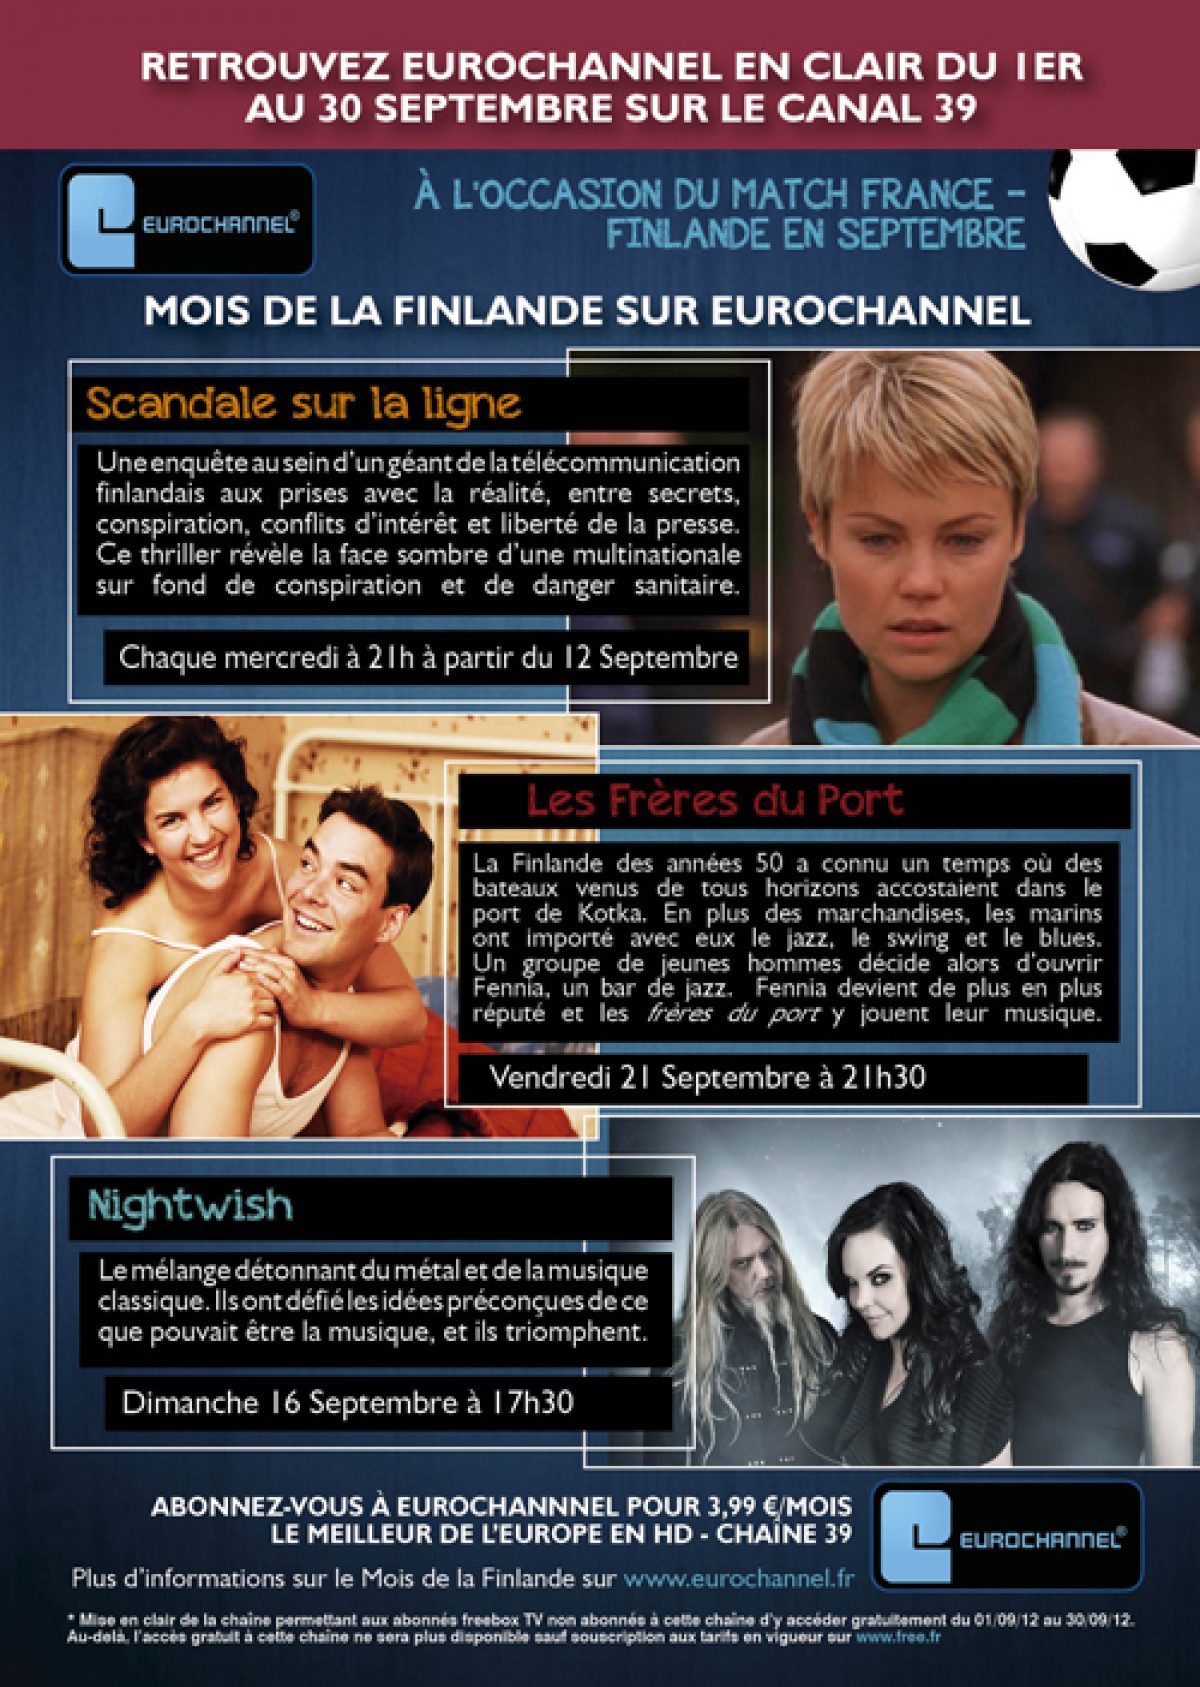 Freebox TV : Eurochannel offerte aux Freenautes durant le mois de la rentrée